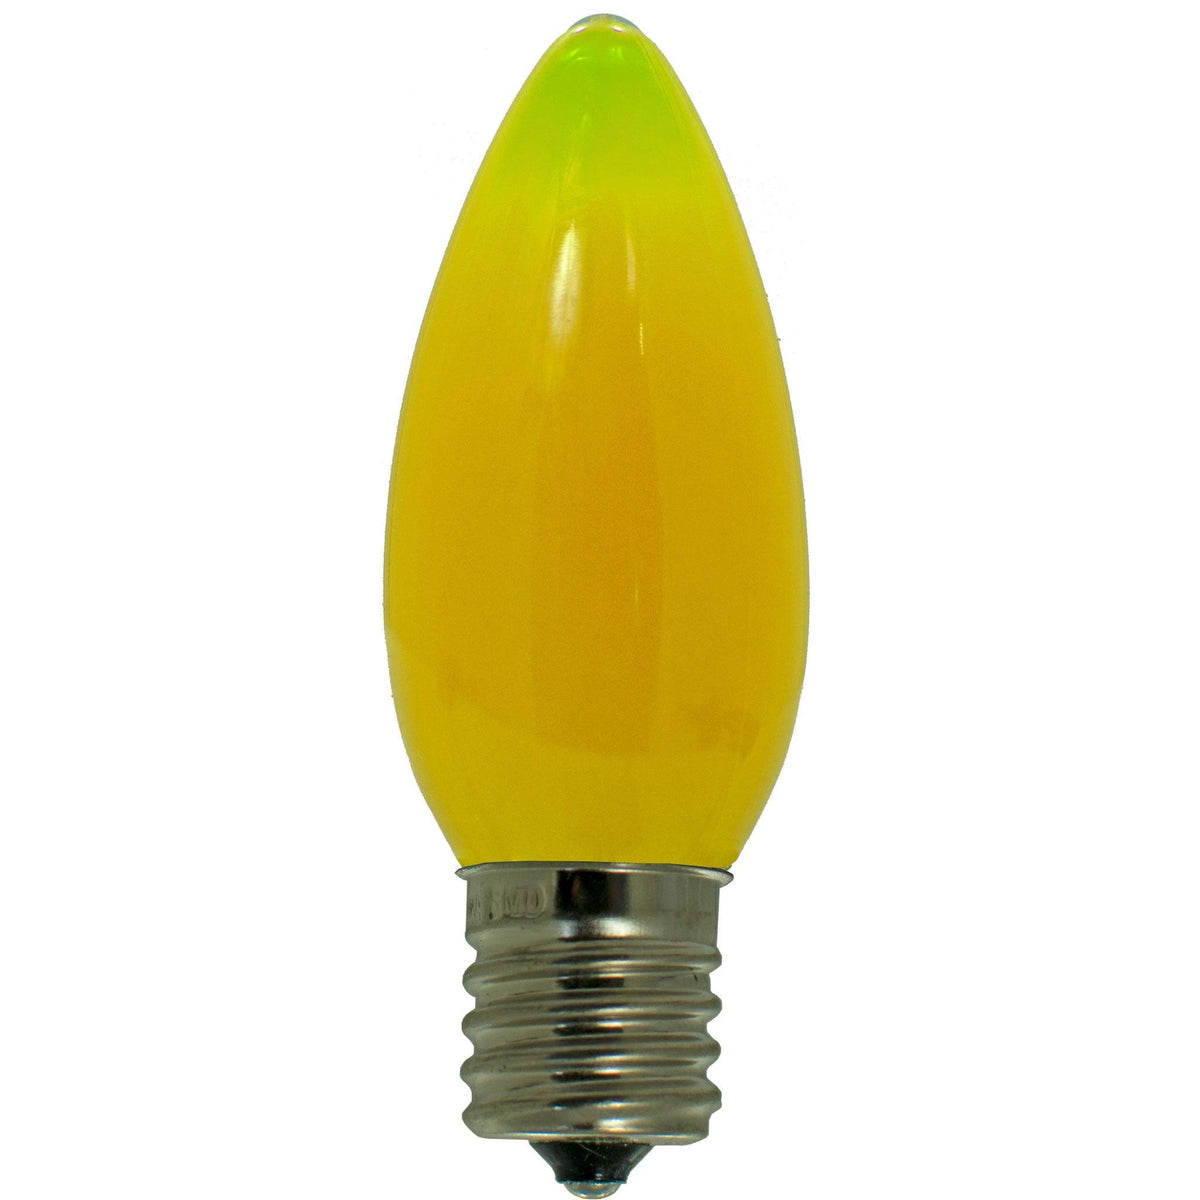 Multi-Color Solid LED Light Bulbs - Lee Display